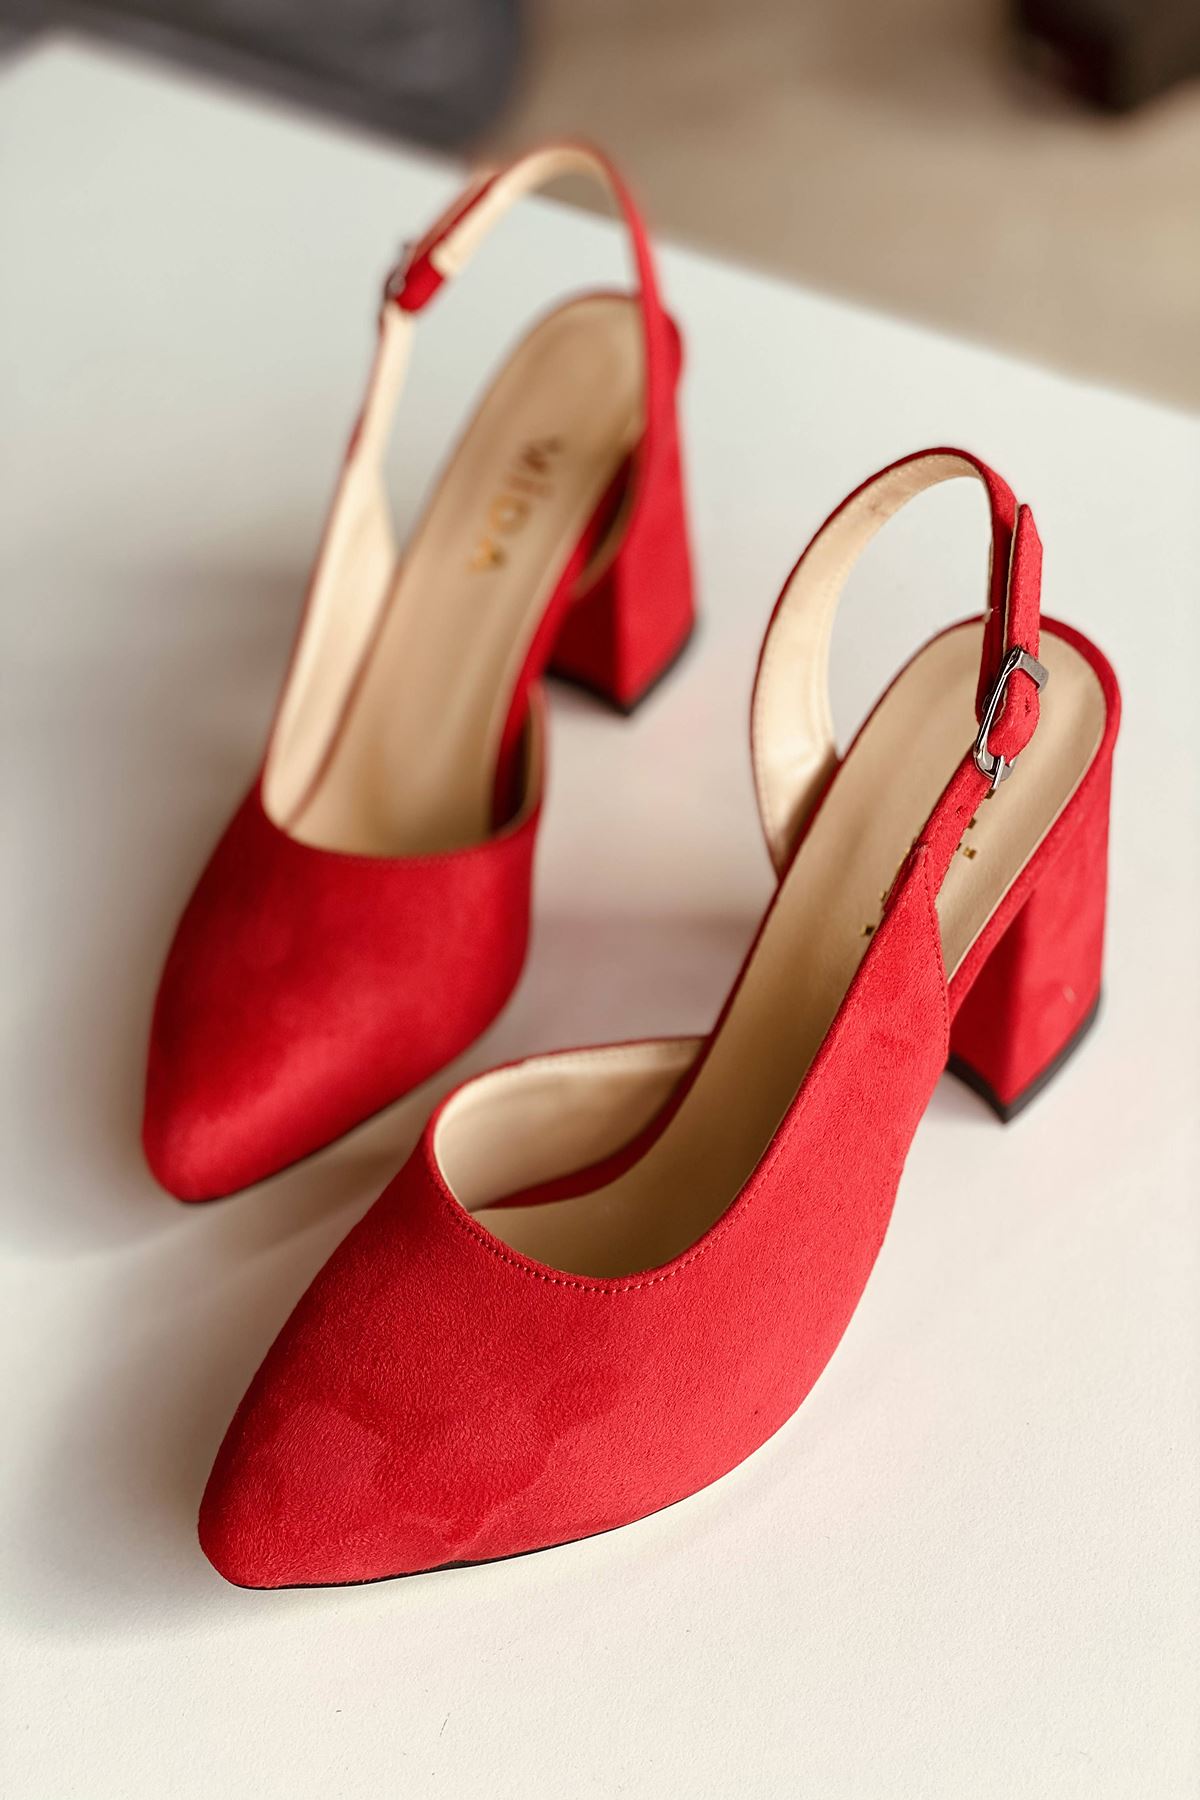 Mida Shoes Y127 Kırmızı Süet Topuklu Ayakkabı